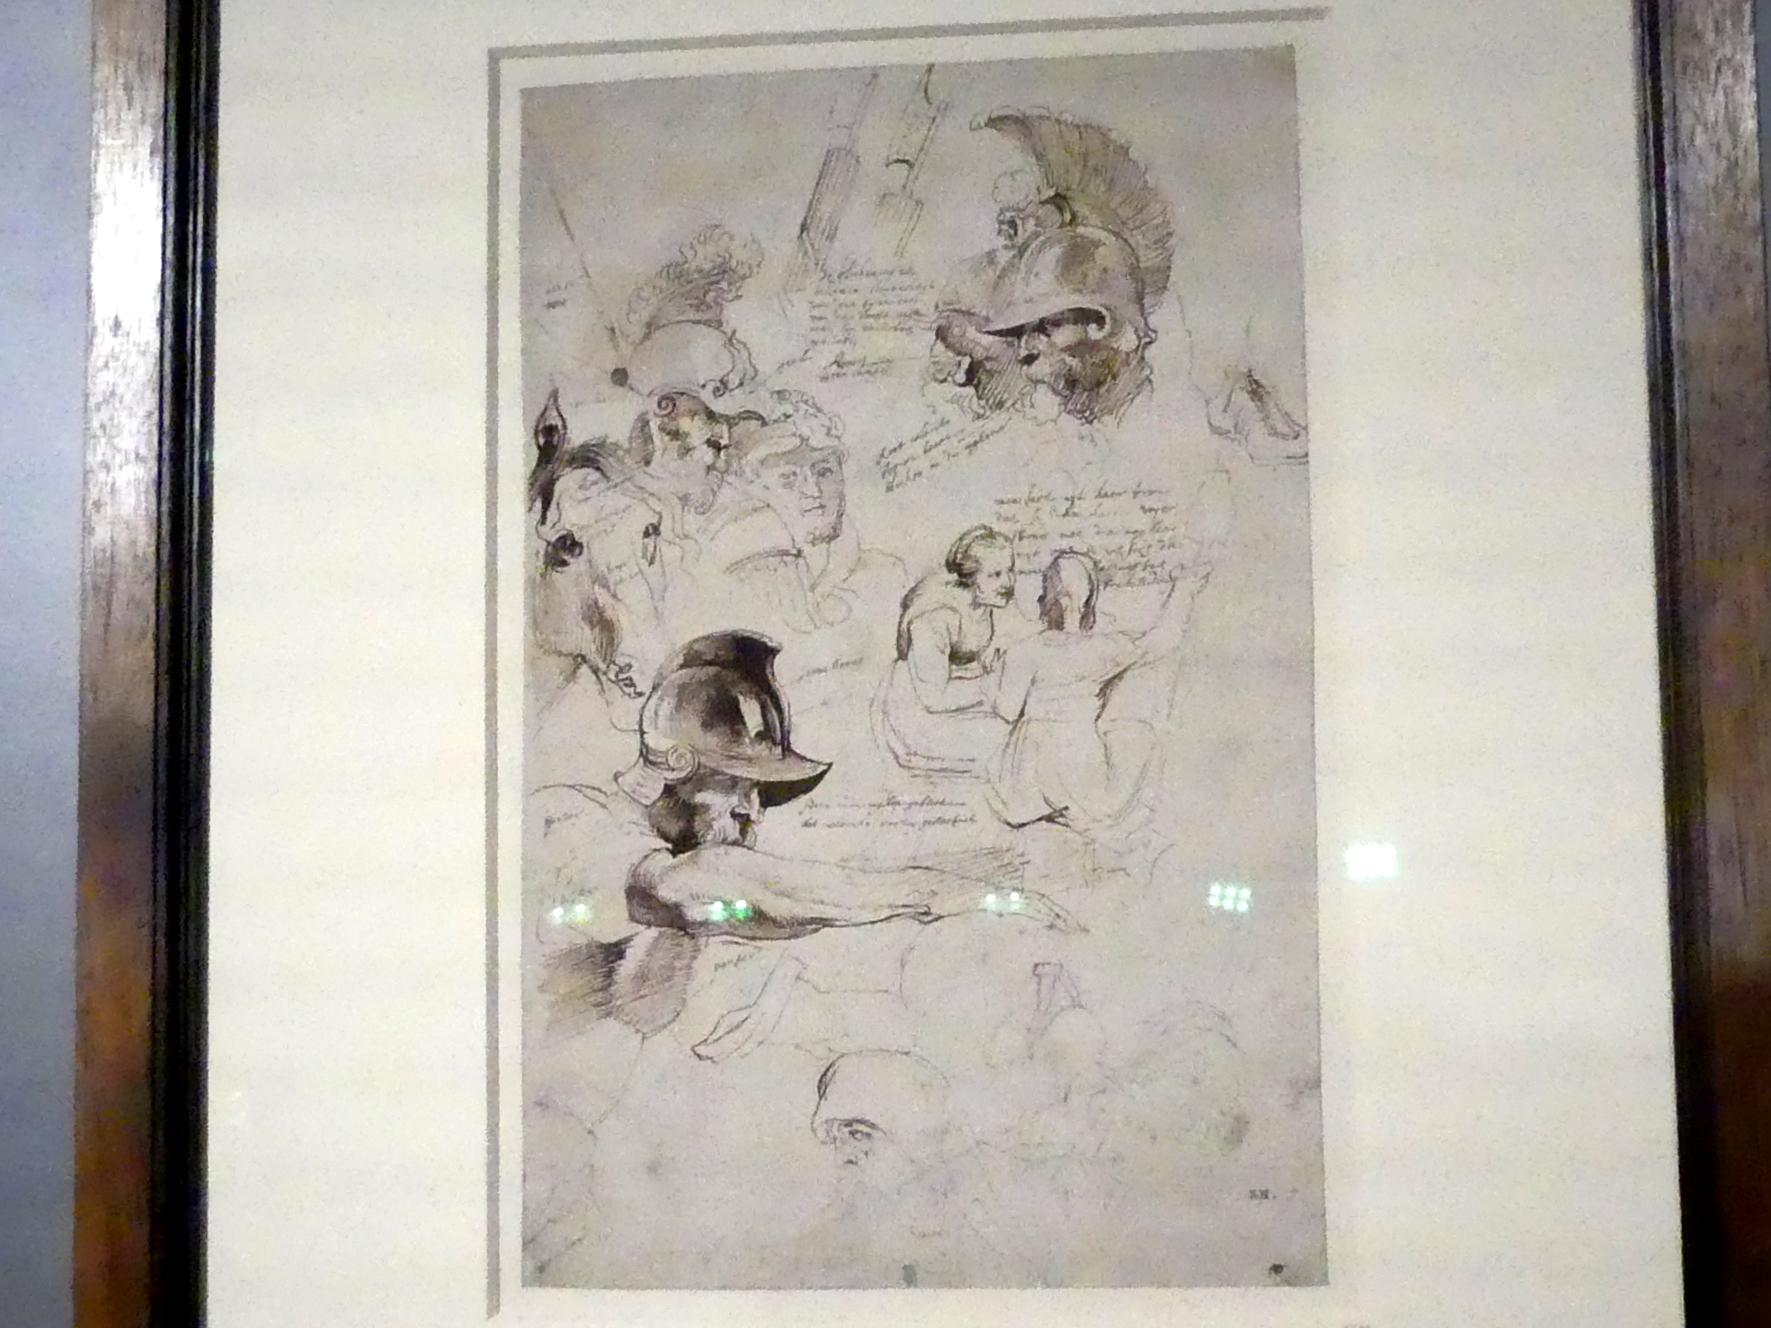 Anthonis (Anton) van Dyck (1614–1641), Studie nach dem "Martyrium des Heiligen Laurentius" von Peter Paul Rubens, München, Alte Pinakothek, Ausstellung "Van Dyck" vom 25.10.2019-02.02.2020, Von Antwerpen nach Italien - 1, um 1616